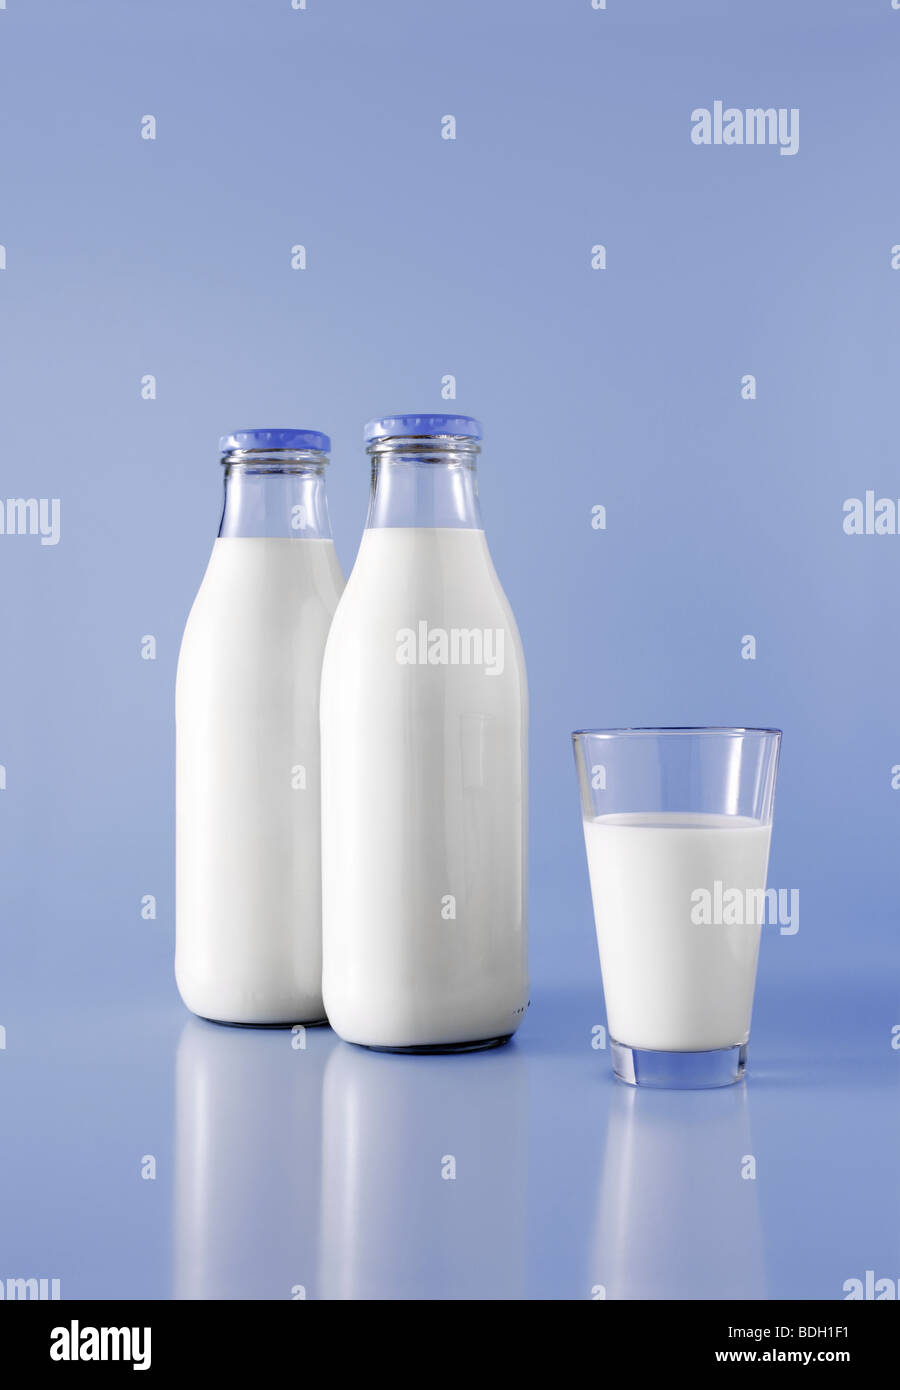 Zwei Flaschen Milch und ein Glas Milch Stockfotografie - Alamy